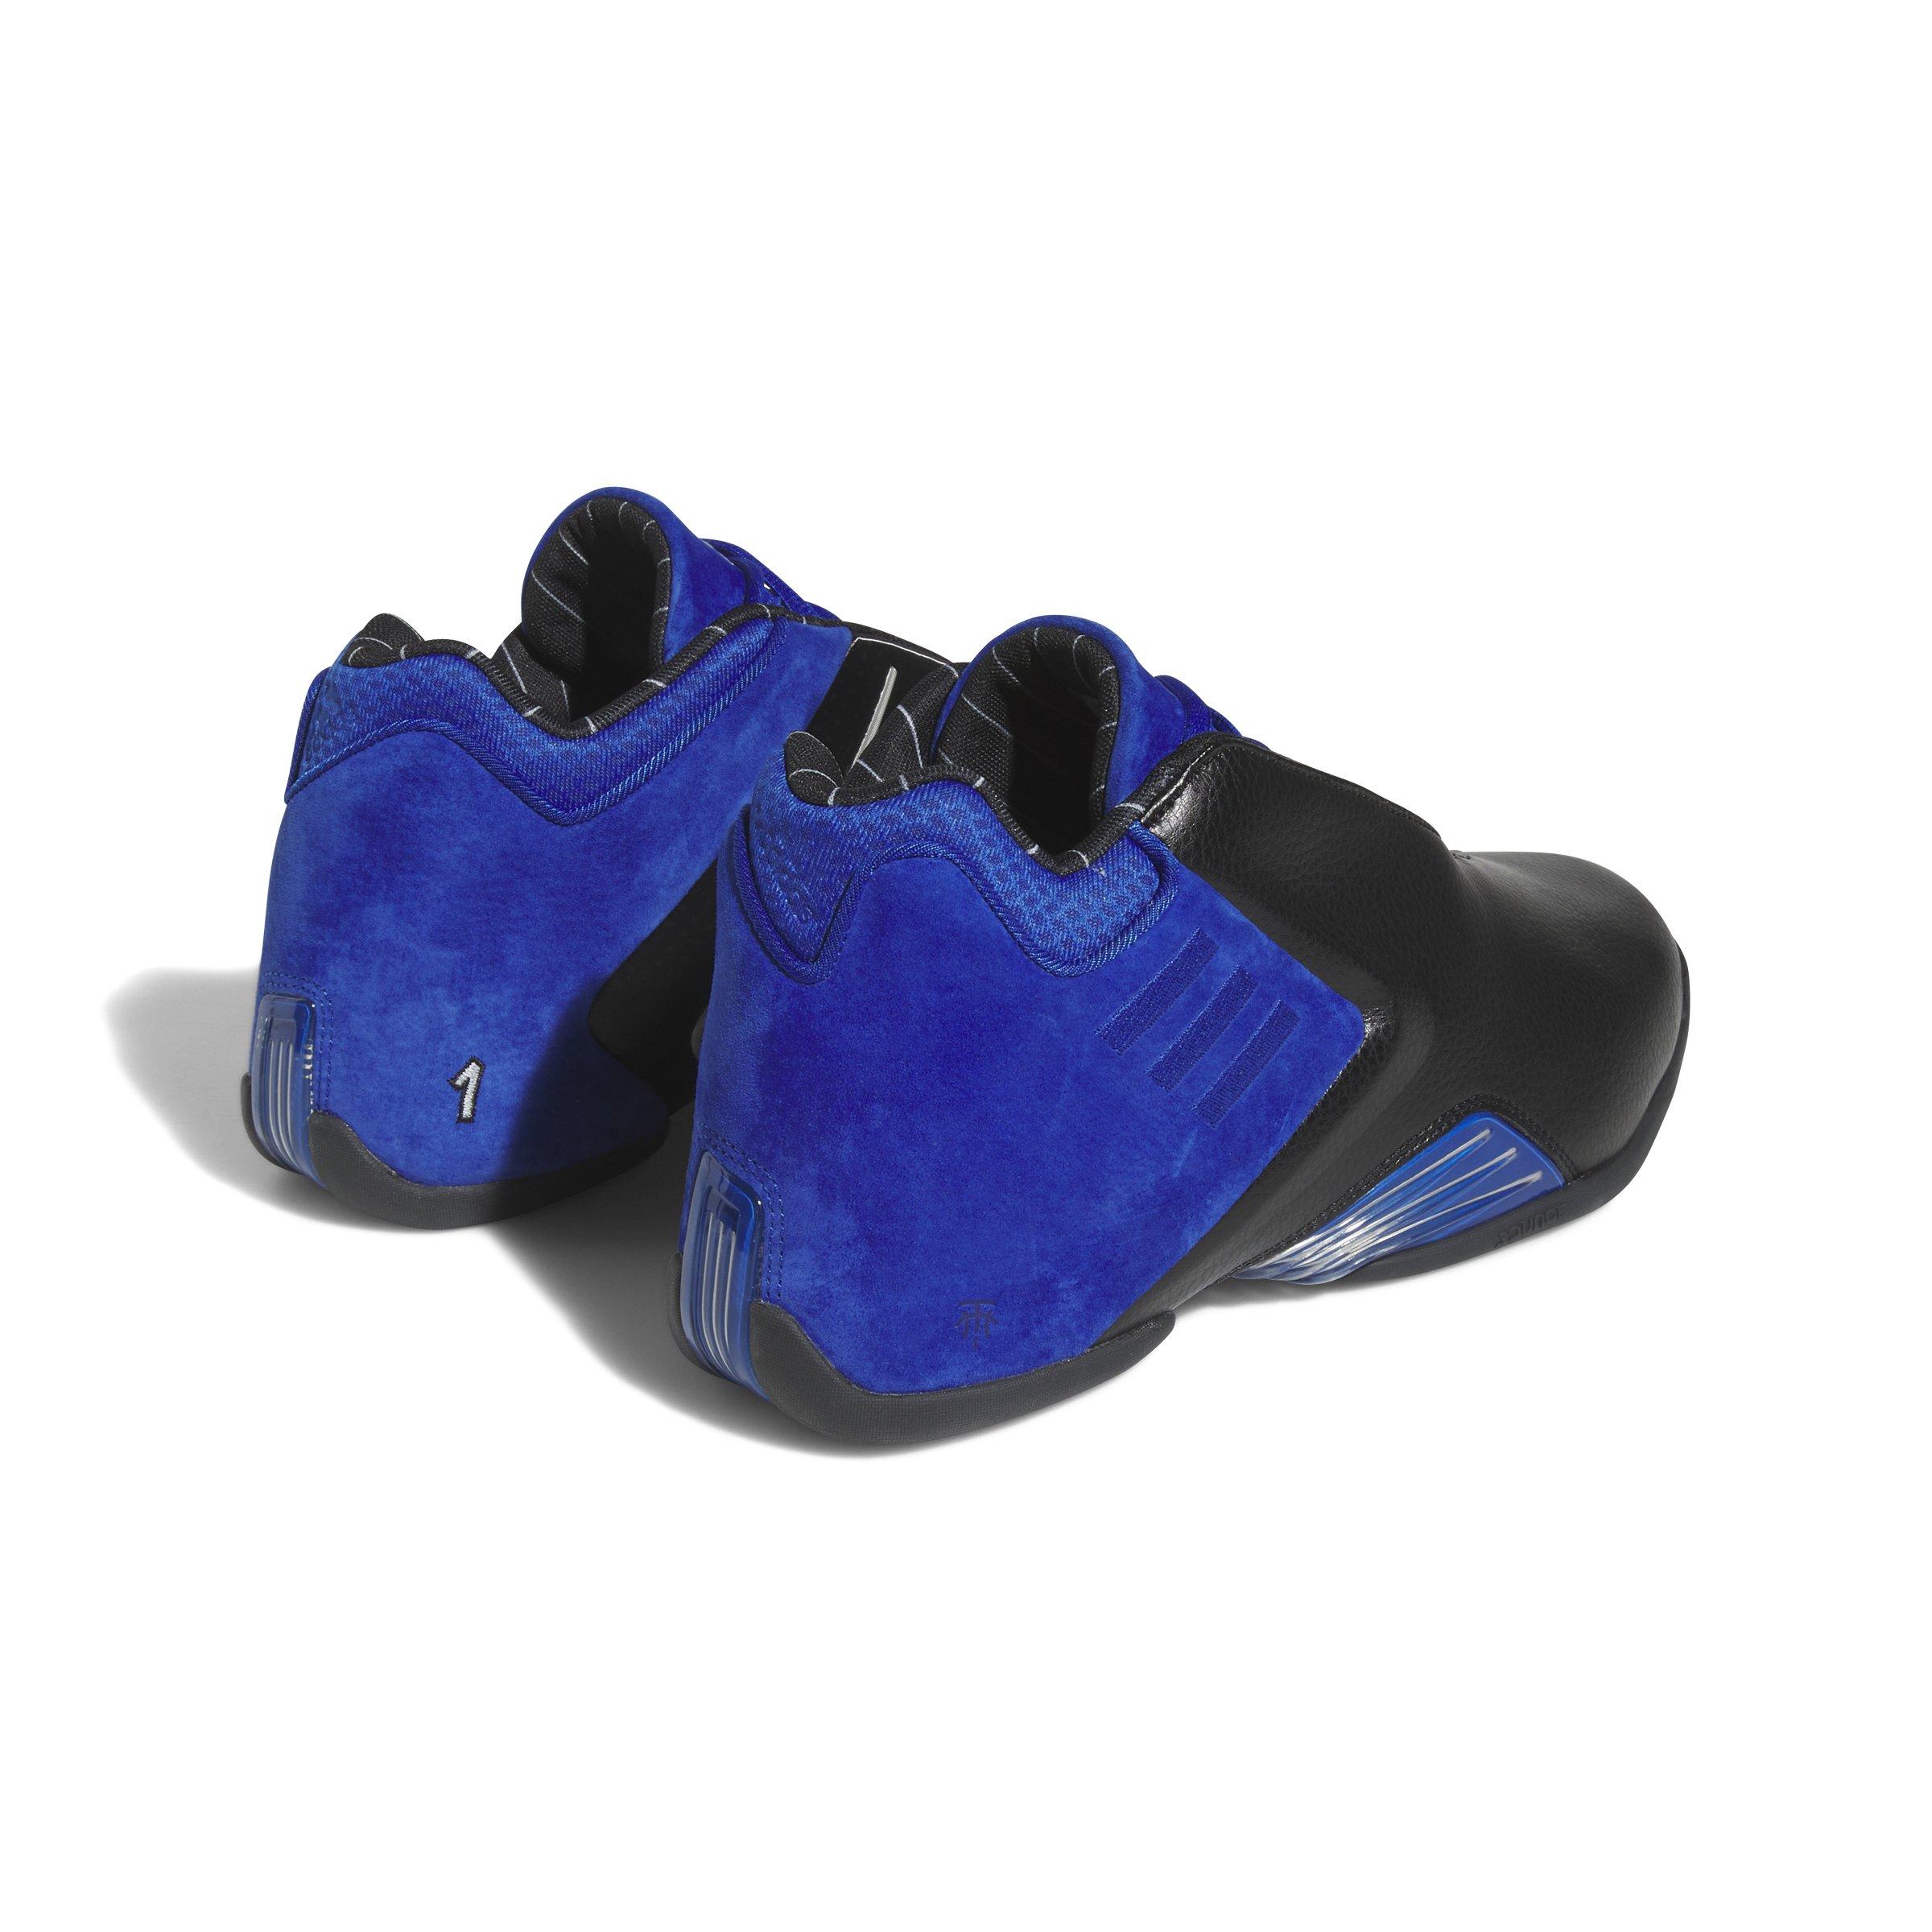 Adidas TMAC Restomod (Black/Royal Blue/Silver) 11.5